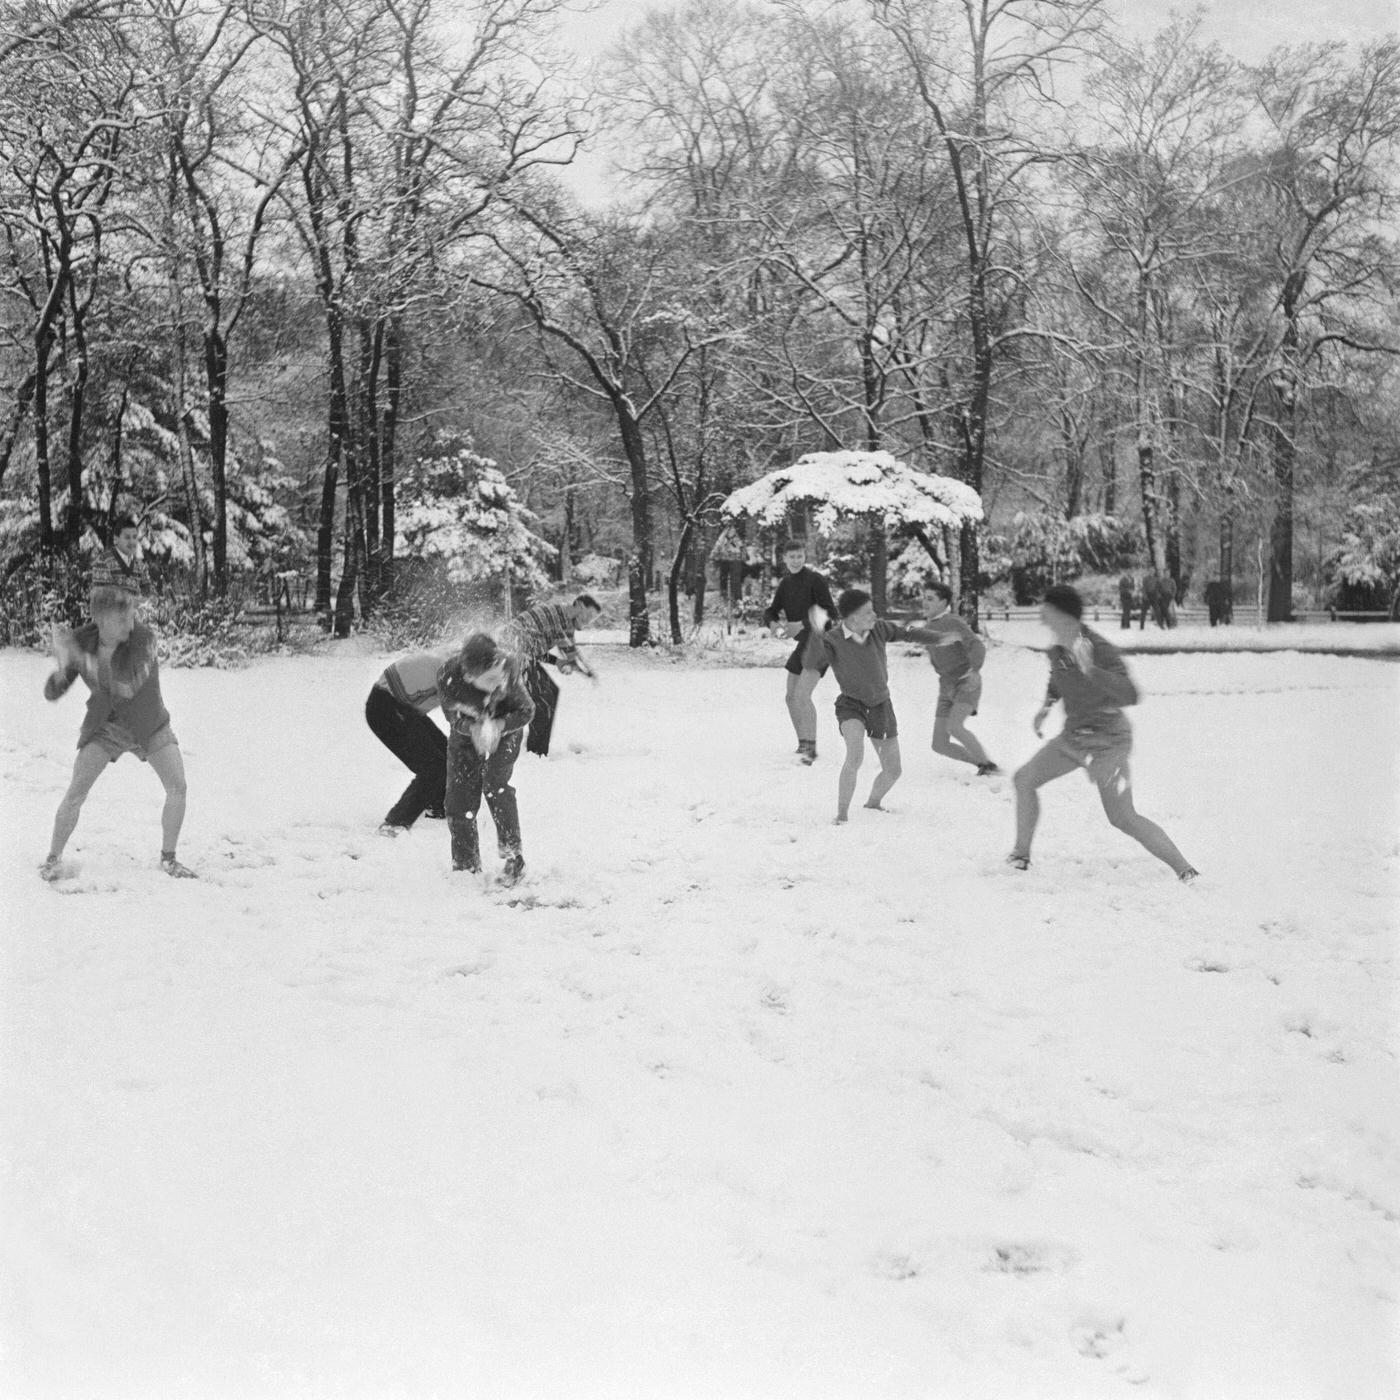 A Bowl Snow Battle At The Bois De Boulogne, Paris, 1956.